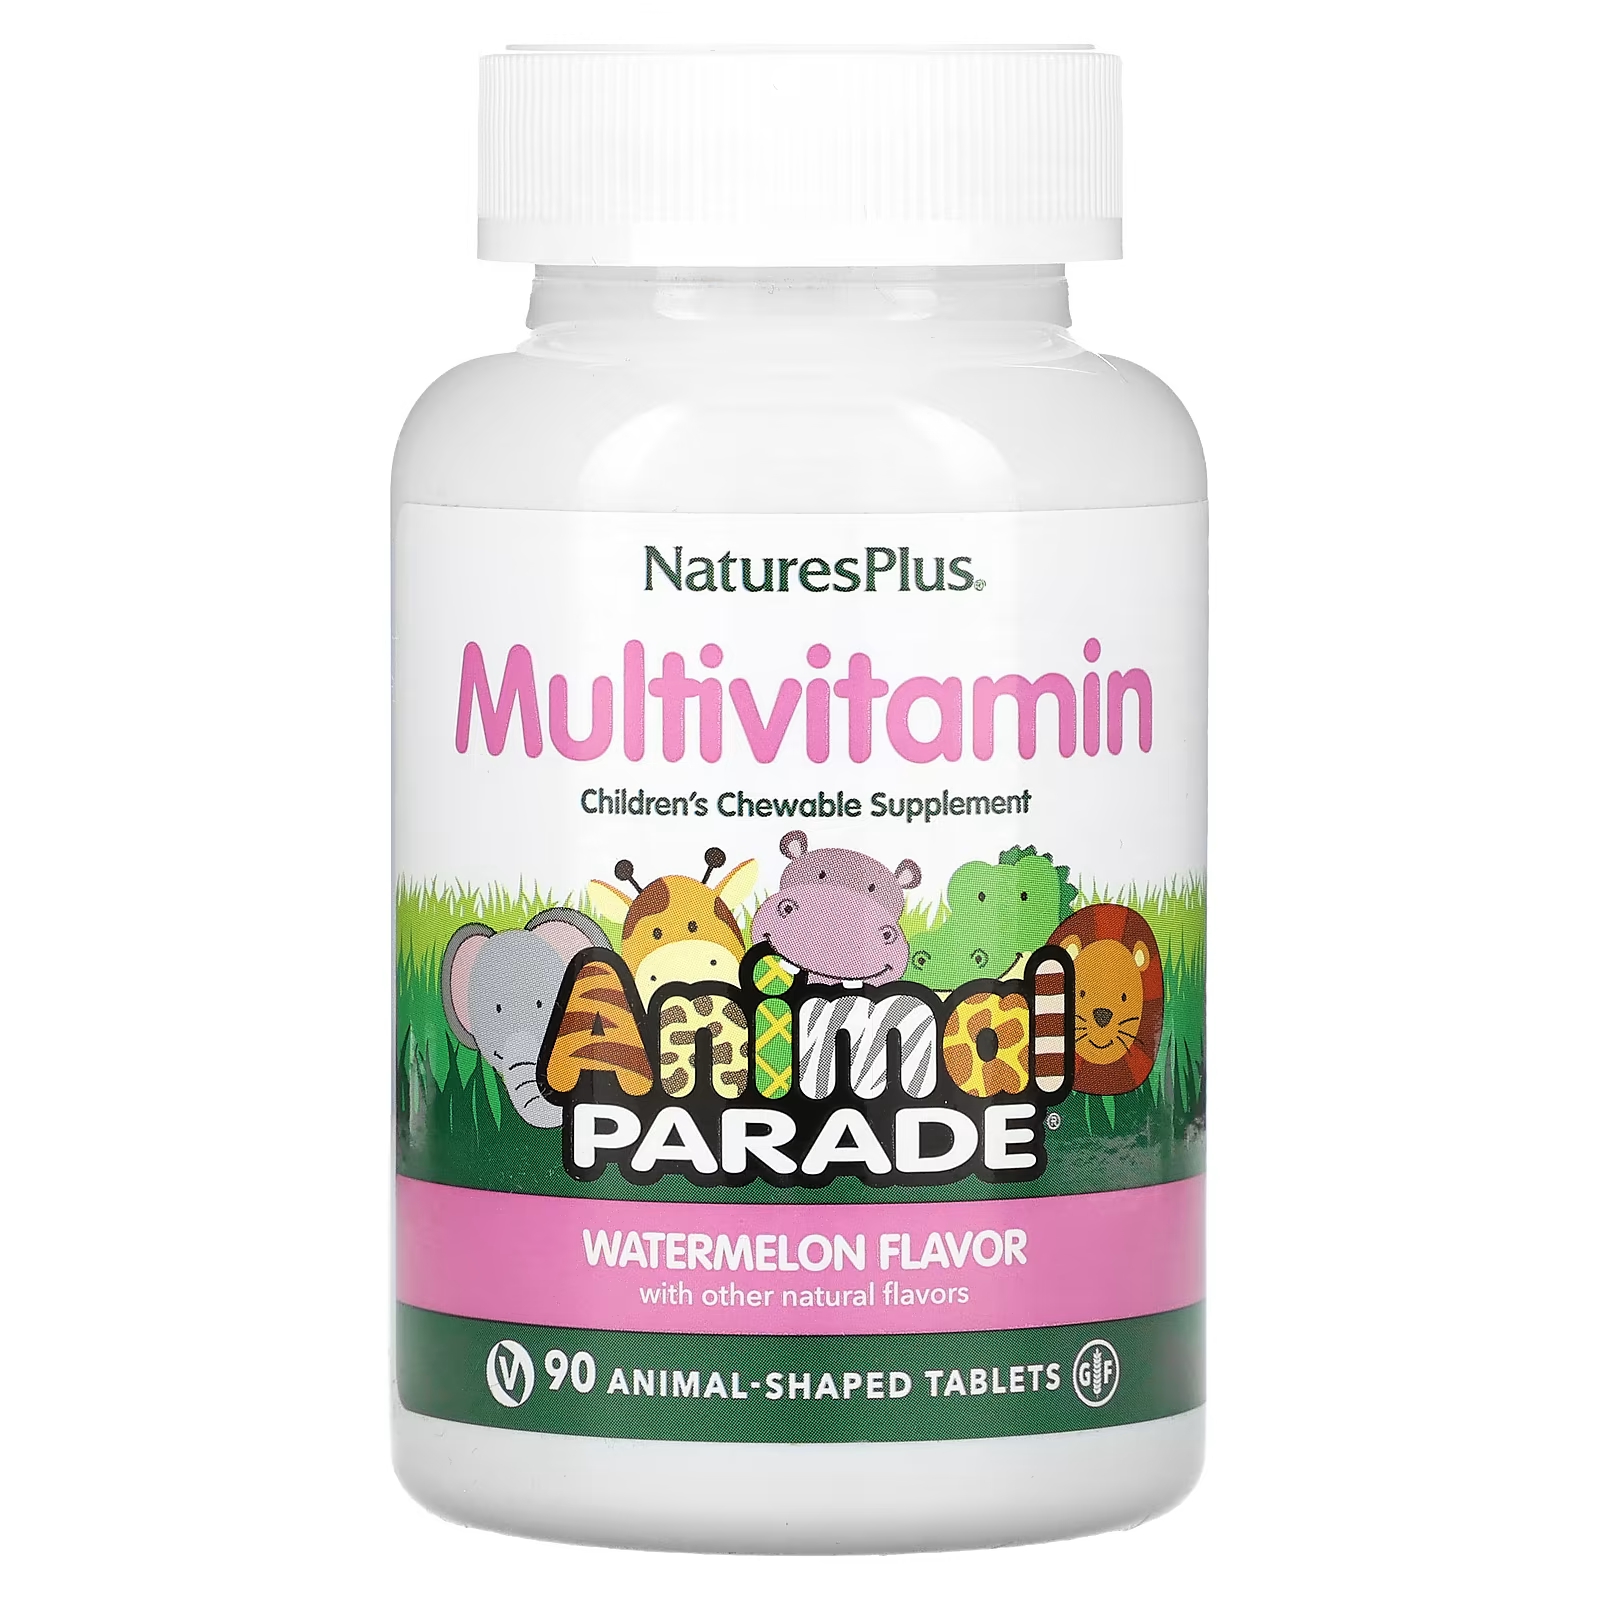 Мультивитамины NaturesPlus для детей со вкусом арбуза, 90 таблеток мультивитамины naturesplus с микроэлементами для детей со вкусом вишни 60 таблеток в форме животных